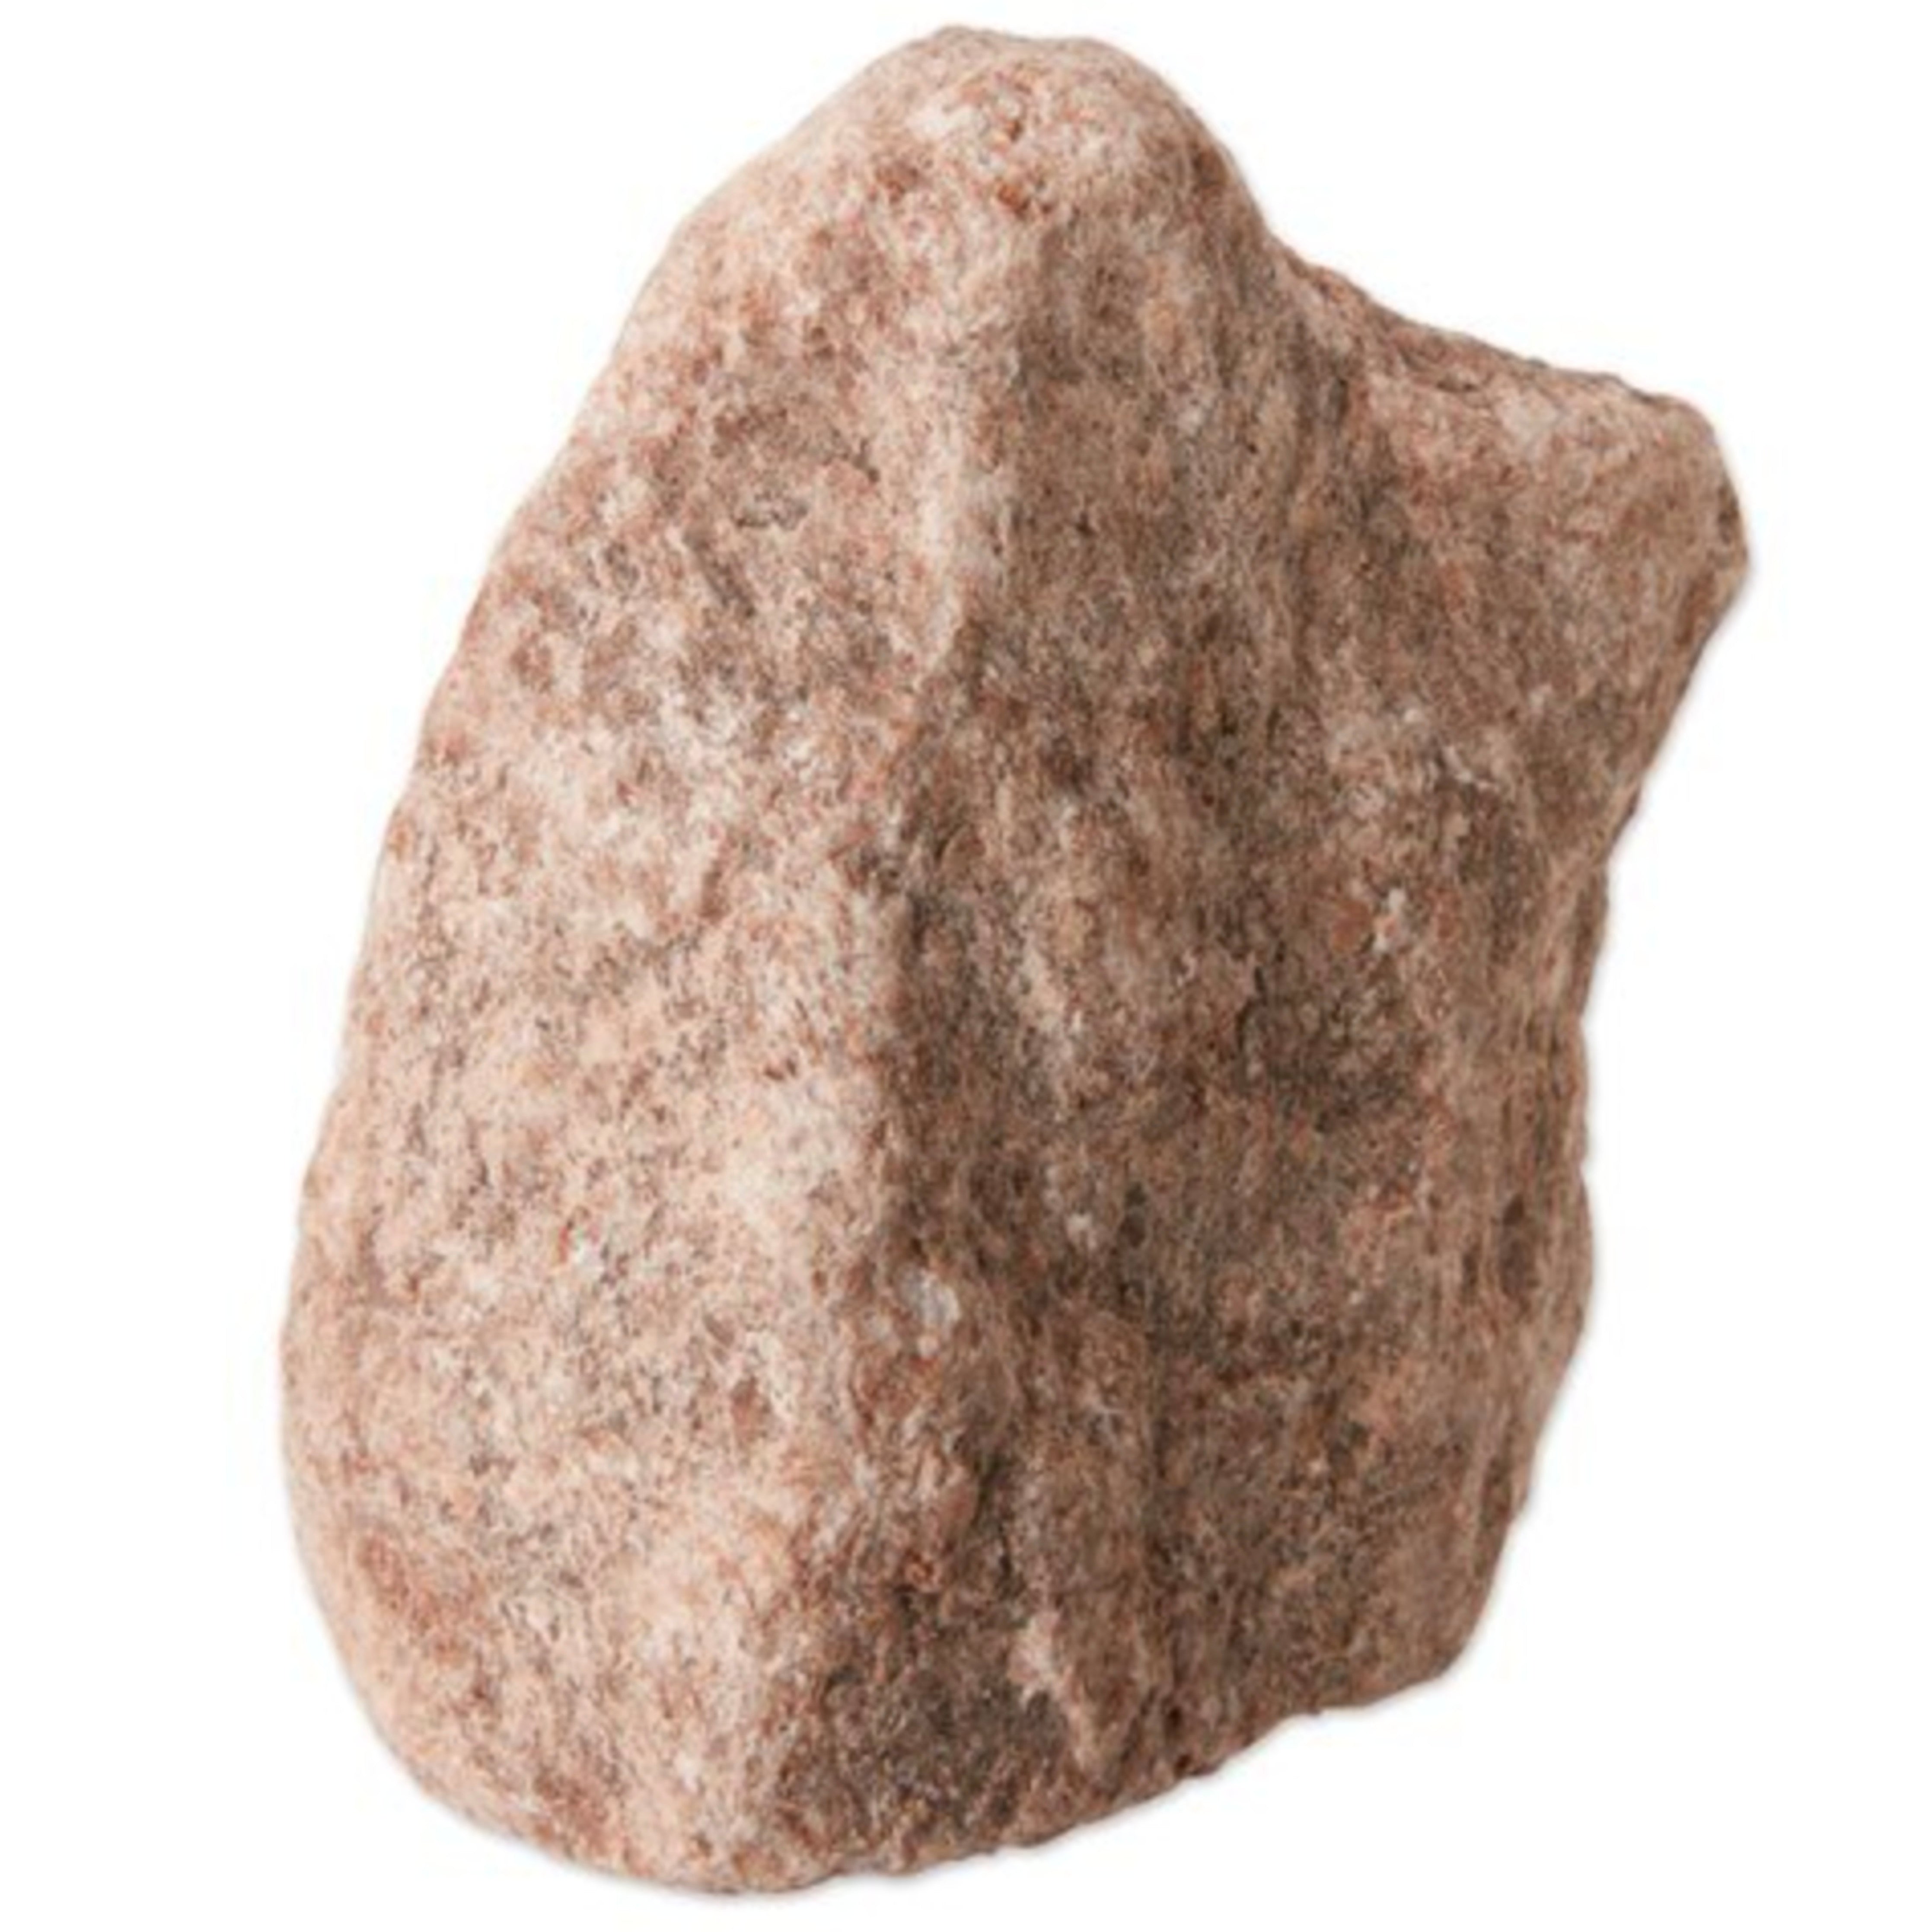 Redmond Rock Salt 3 lb